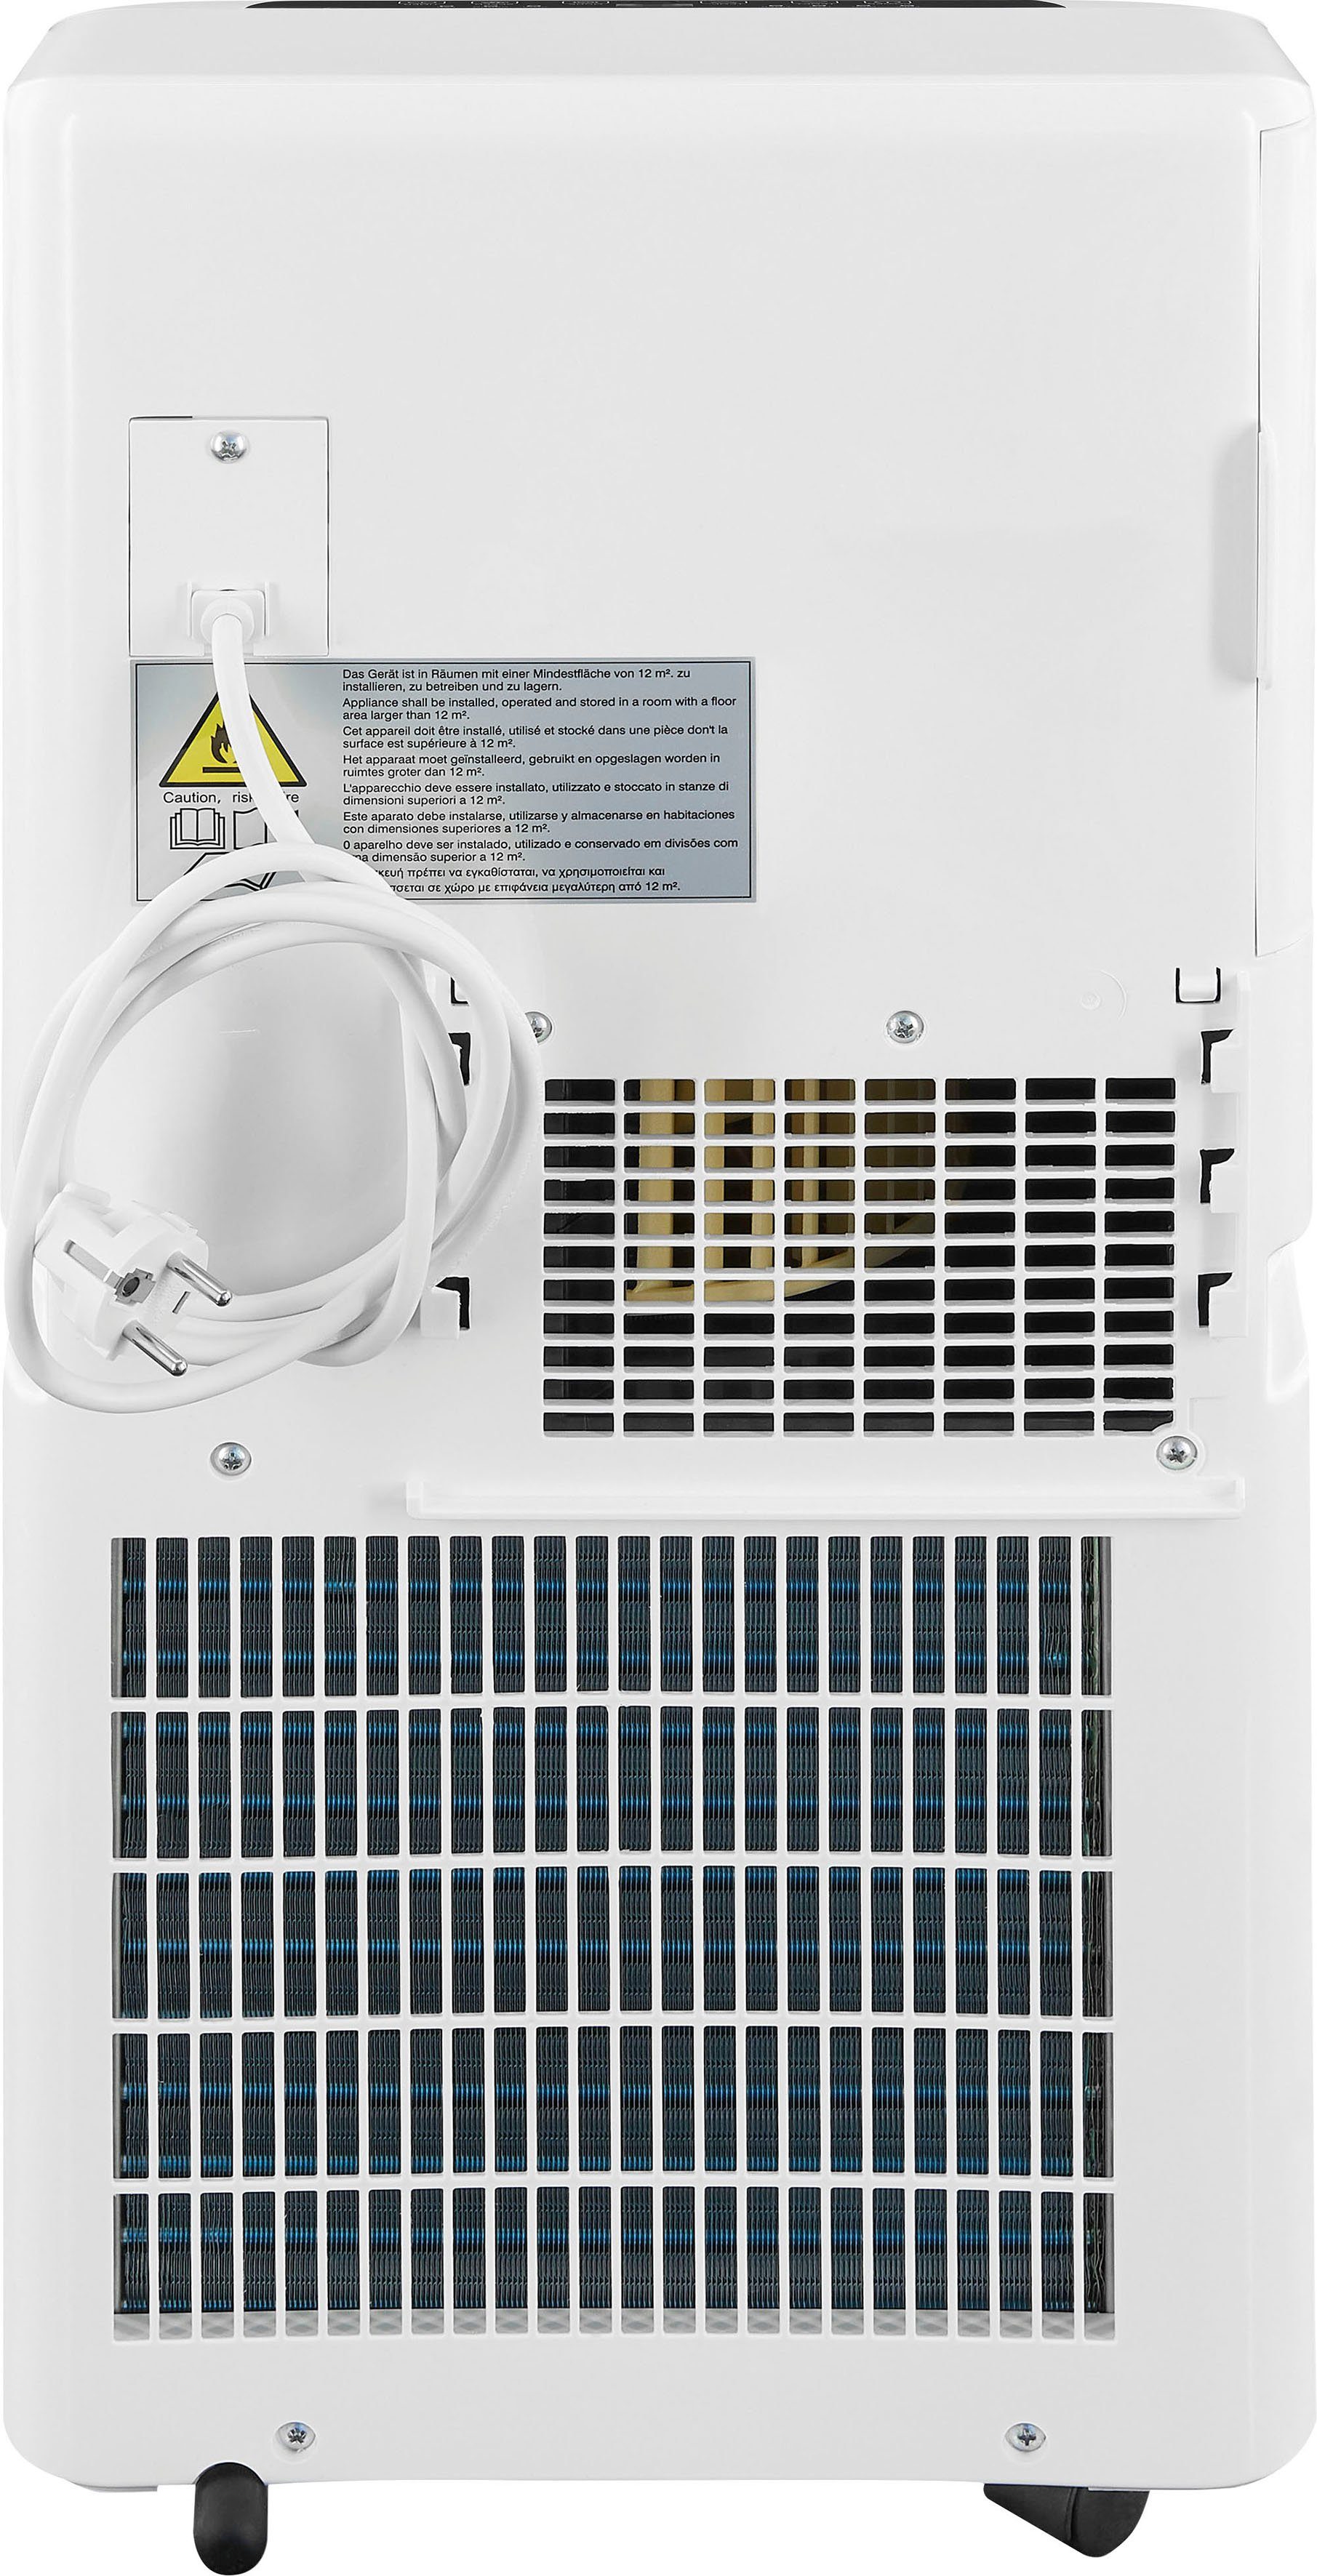 Luftkühlung - exquisit we, m² 3-in-1-Klimagerät CM geeignet - Räume Entfeuchtung 20 30752 für Ventilation,